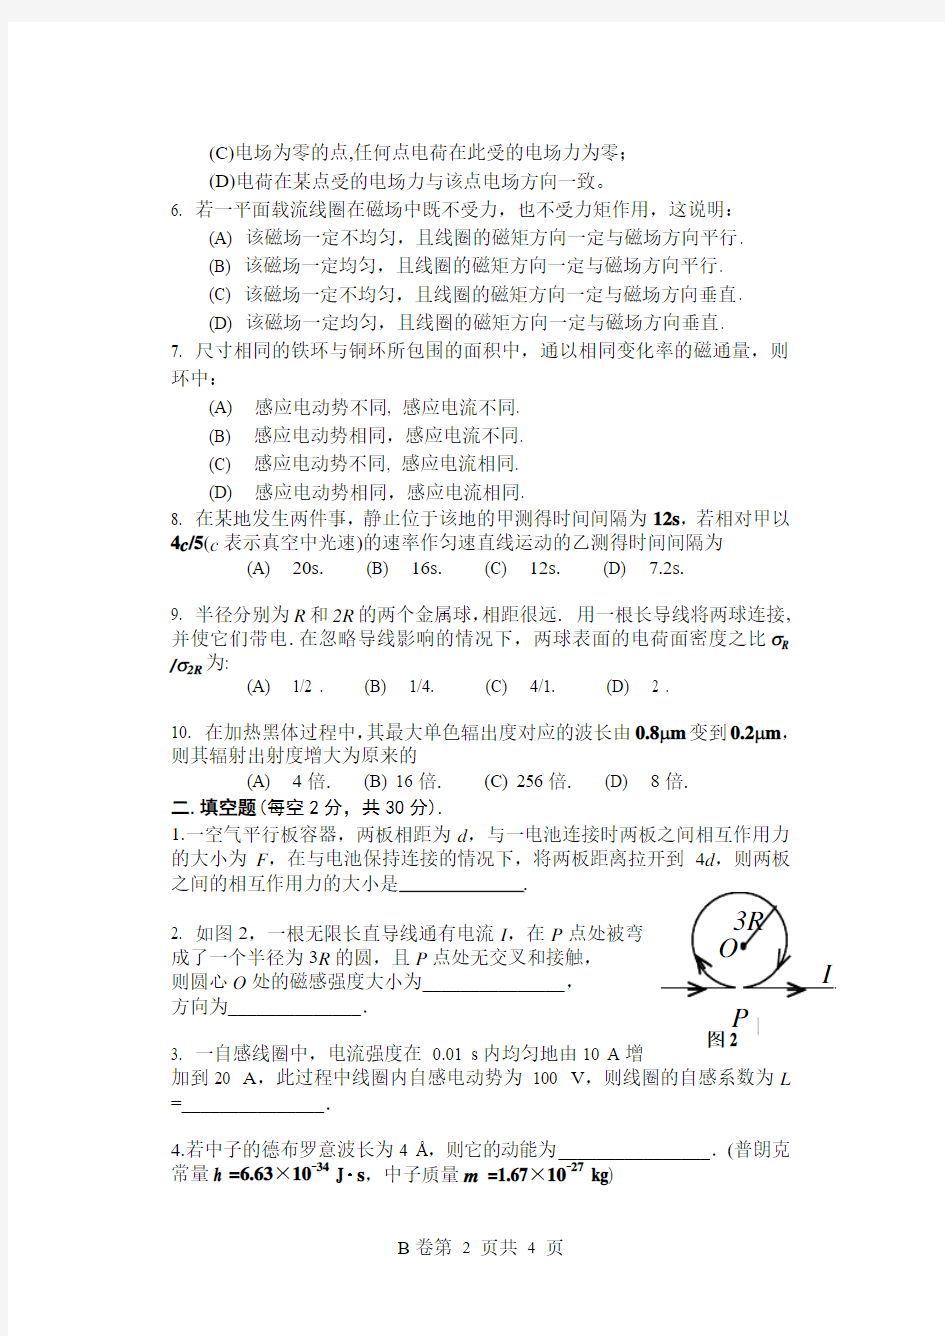 长江大学物理试卷及答案 (2)